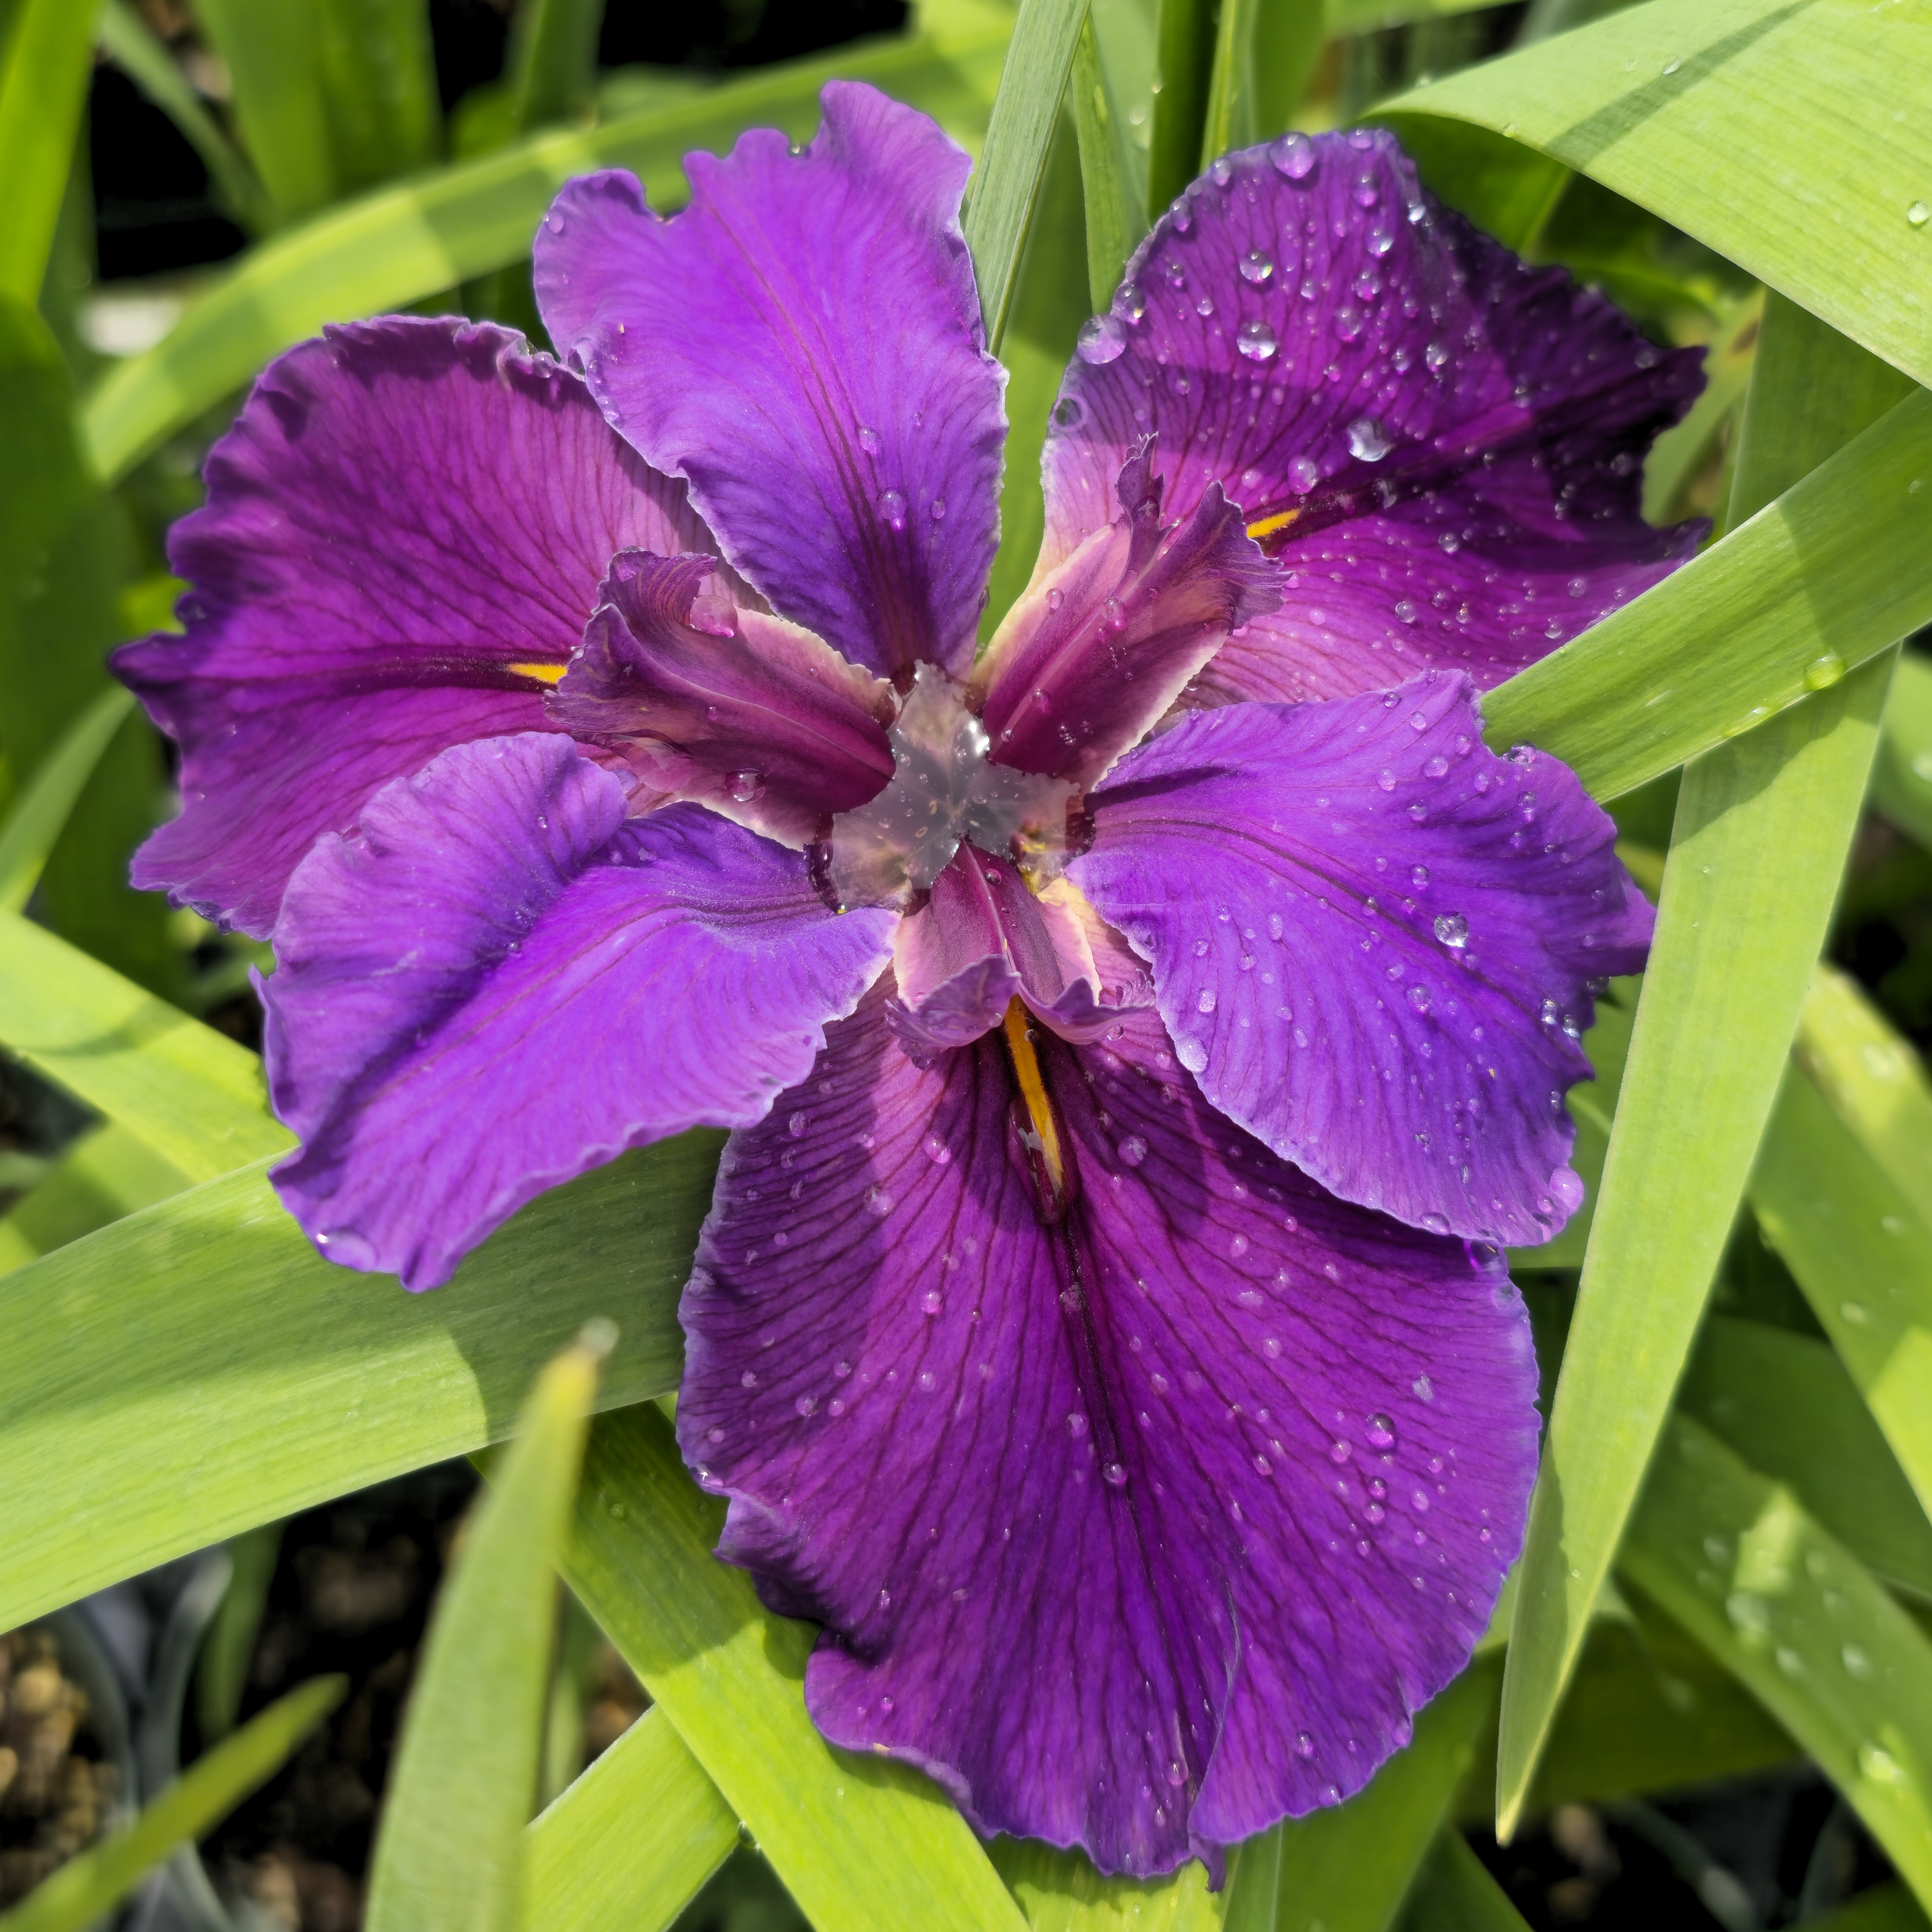 Rocky Hunt Louisiana Iris